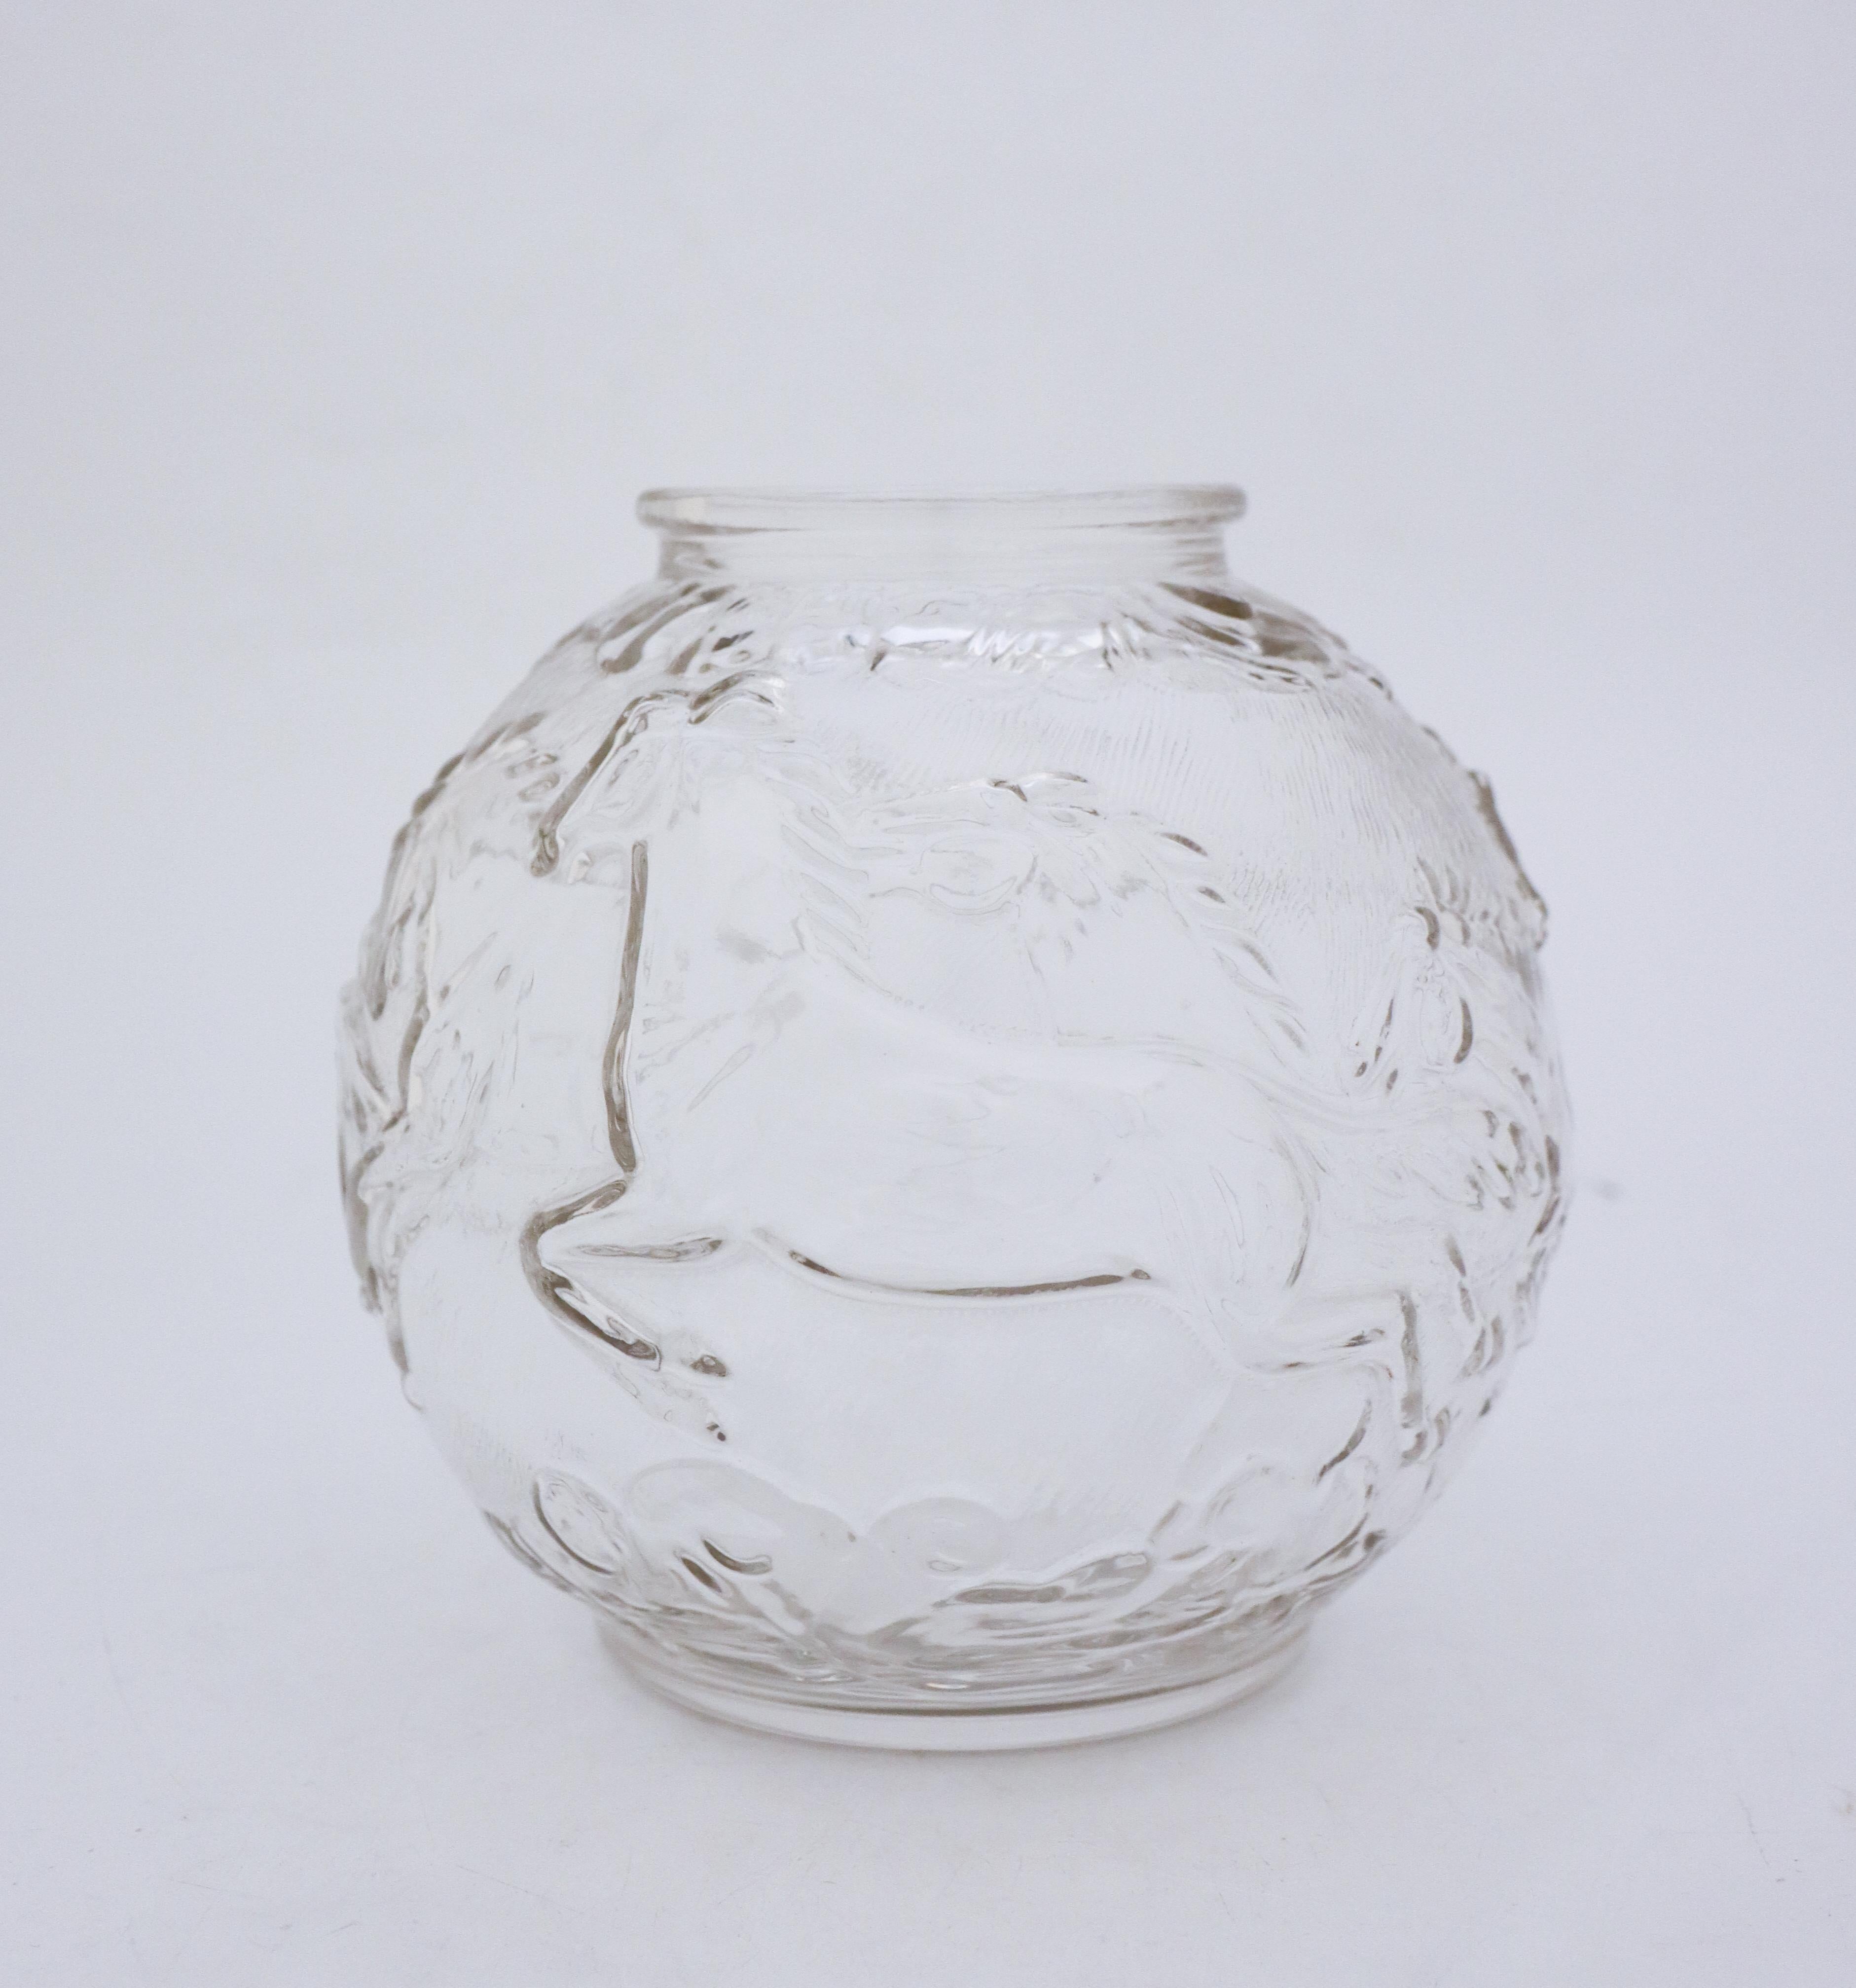 Eine atemberaubende runde Kugelvase aus Glas, entworfen von Edvin Ollers in der Glimma Glashütte in den 1950er Jahren. Er hat einen Durchmesser von 18 cm und ist etwa 18 cm hoch. Die Vase ist in transparentem Glas mit einem Dekor von Pferden, es ist